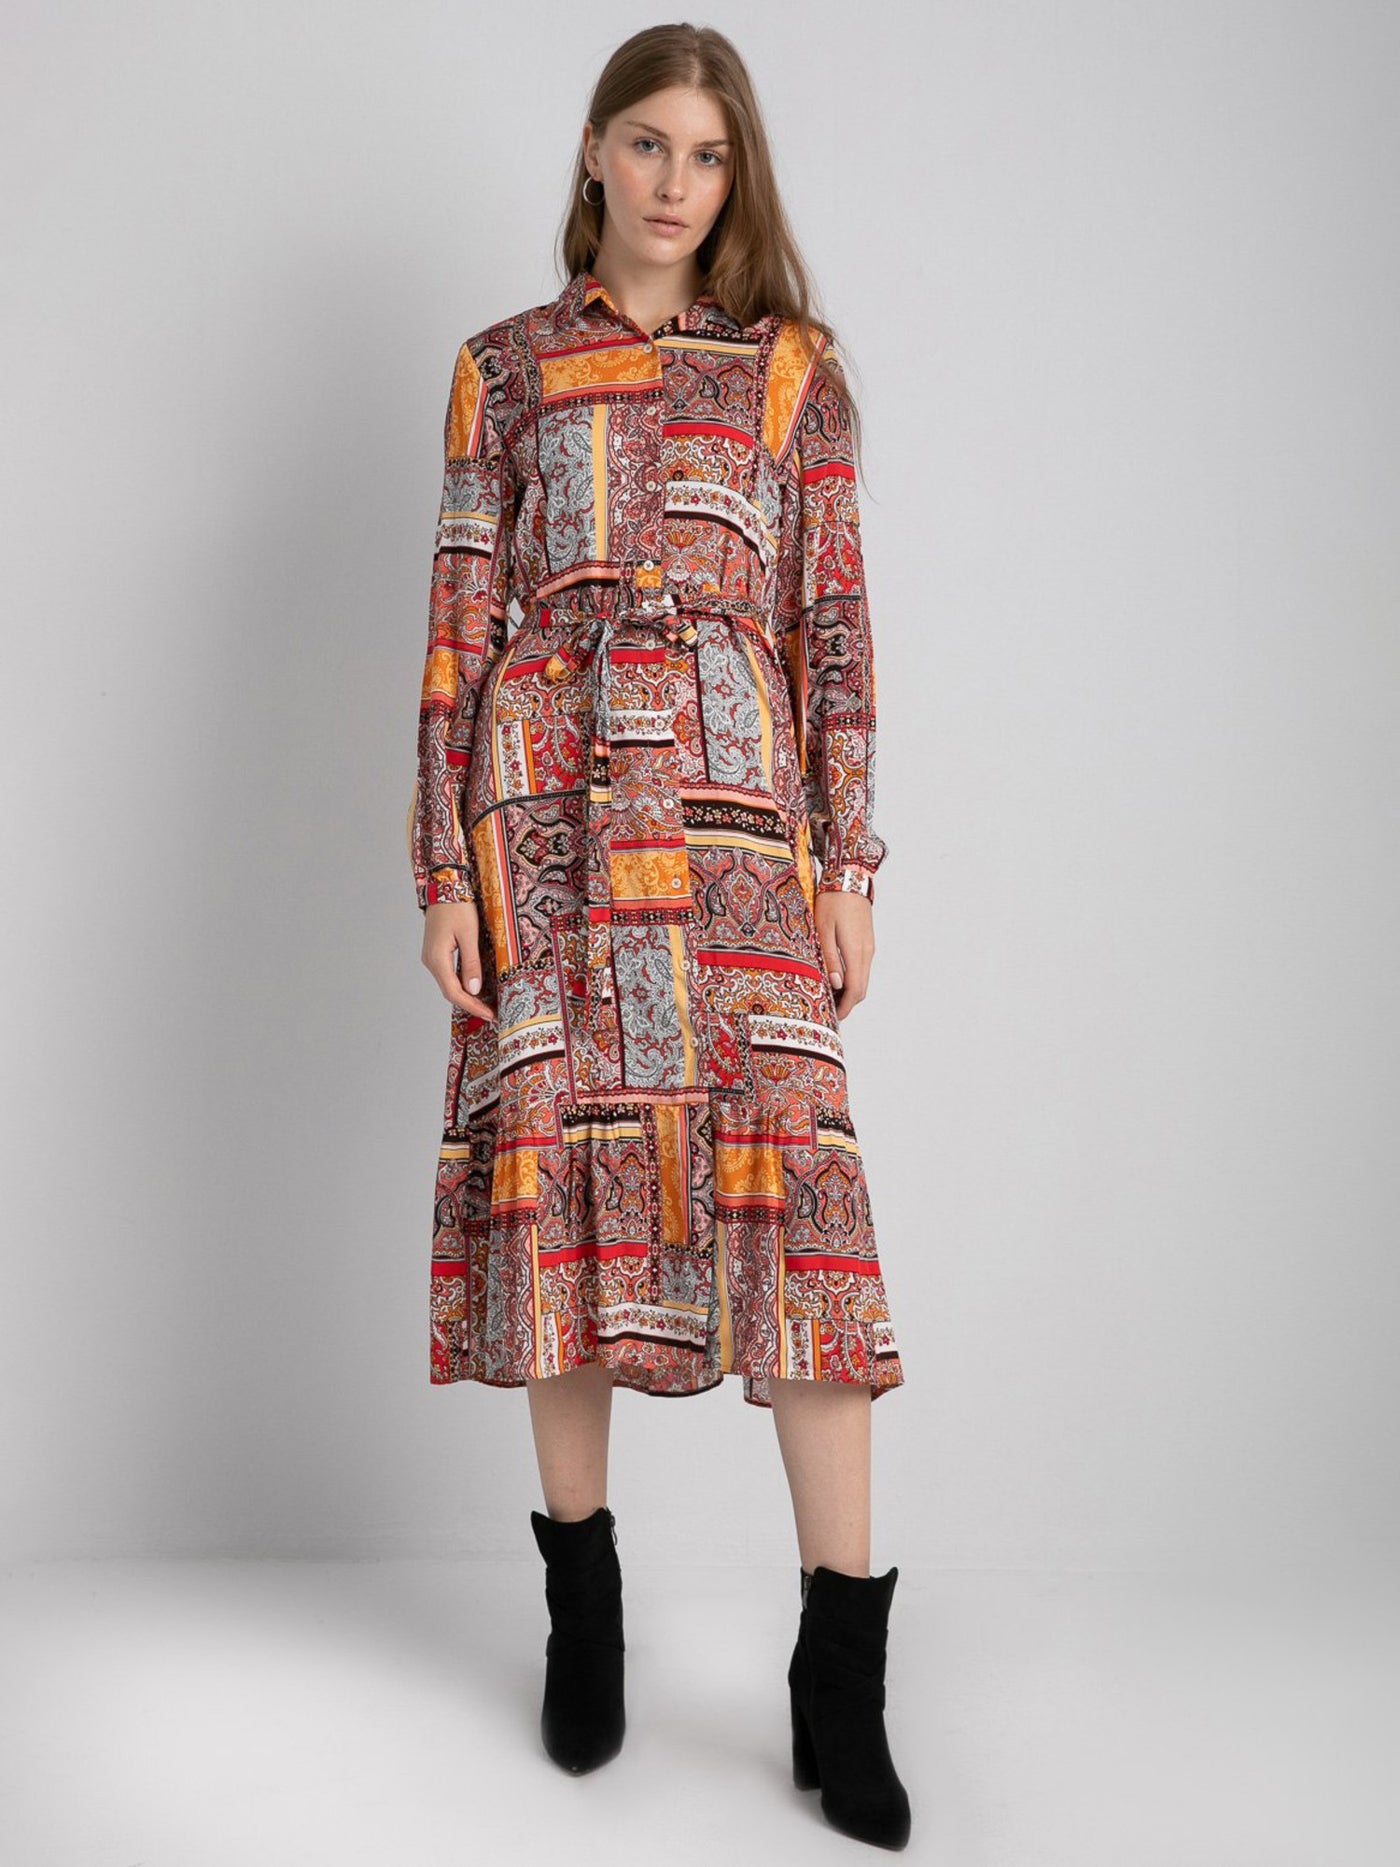 Printed Dress - Knee Length - Long Sleeves